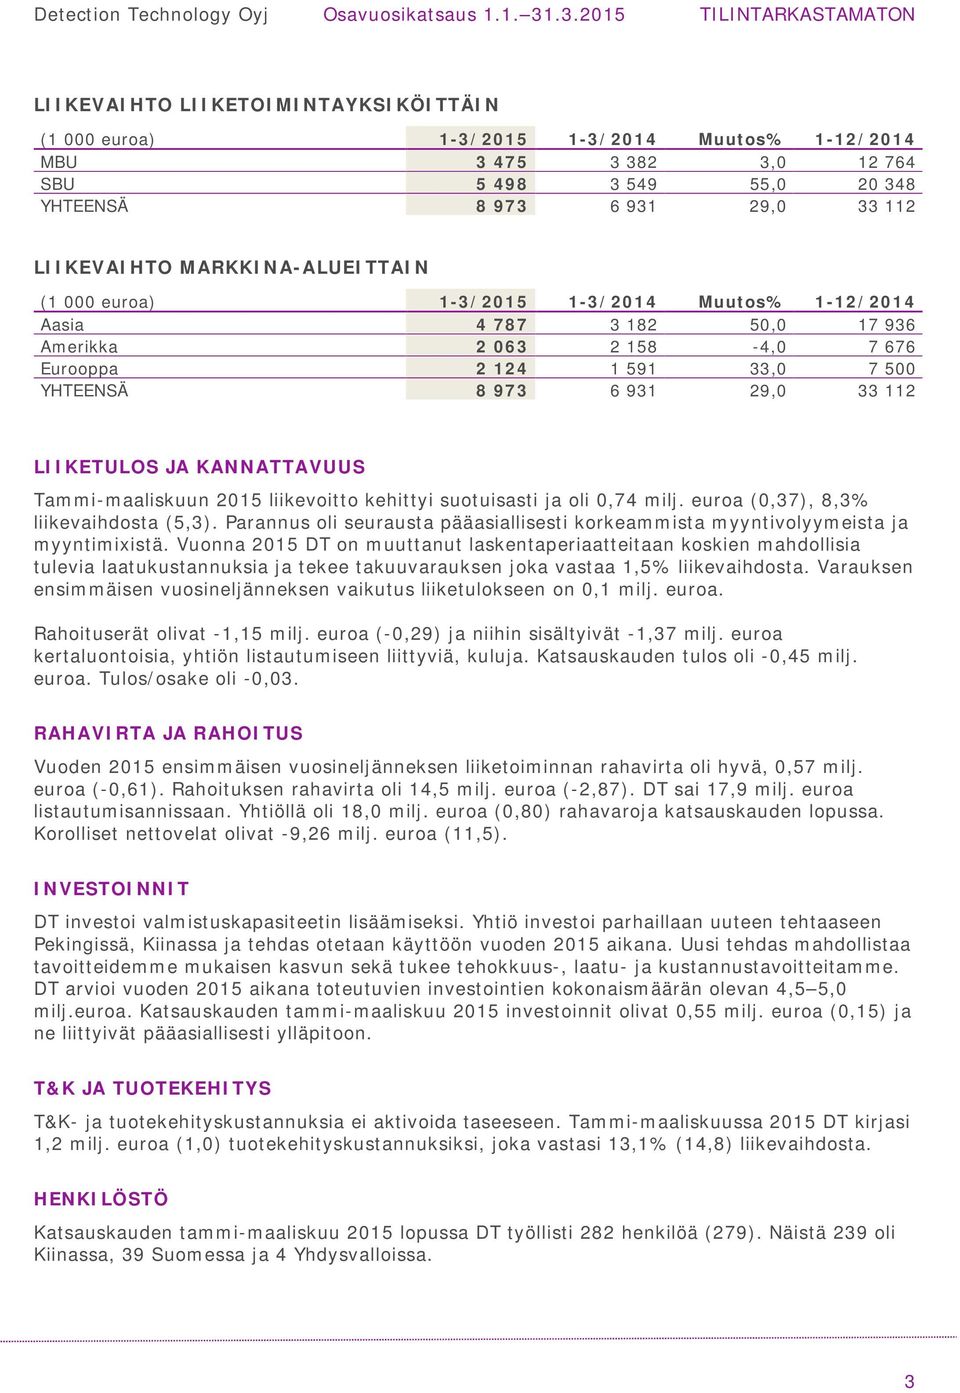 LIIKETULOS JA KANNATTAVUUS Tammi-maaliskuun 2015 liikevoitto kehittyi suotuisasti ja oli 0,74 milj. euroa (0,37), 8,3% liikevaihdosta (5,3).